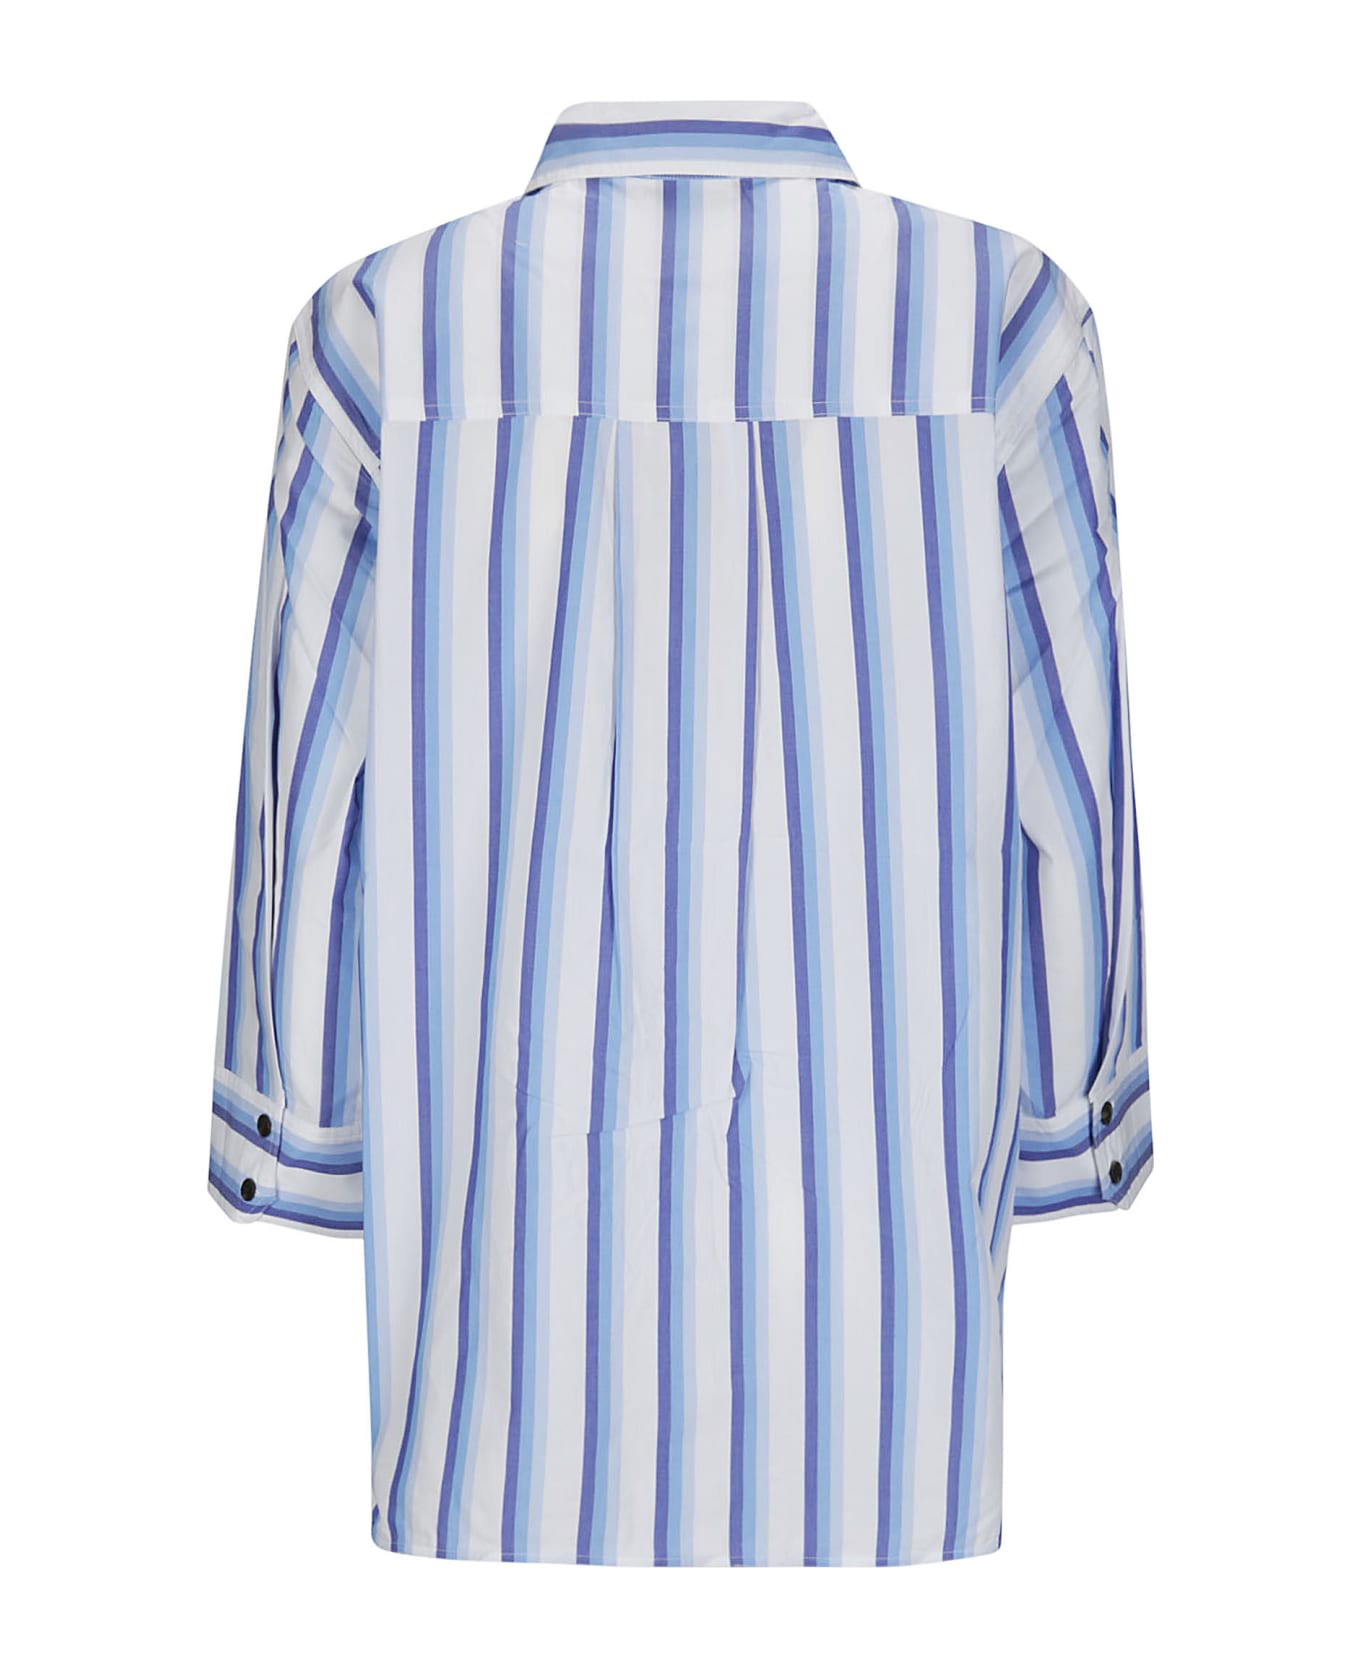 Ganni Stripe Cotton Shirt - SILVER LAKE BLUE